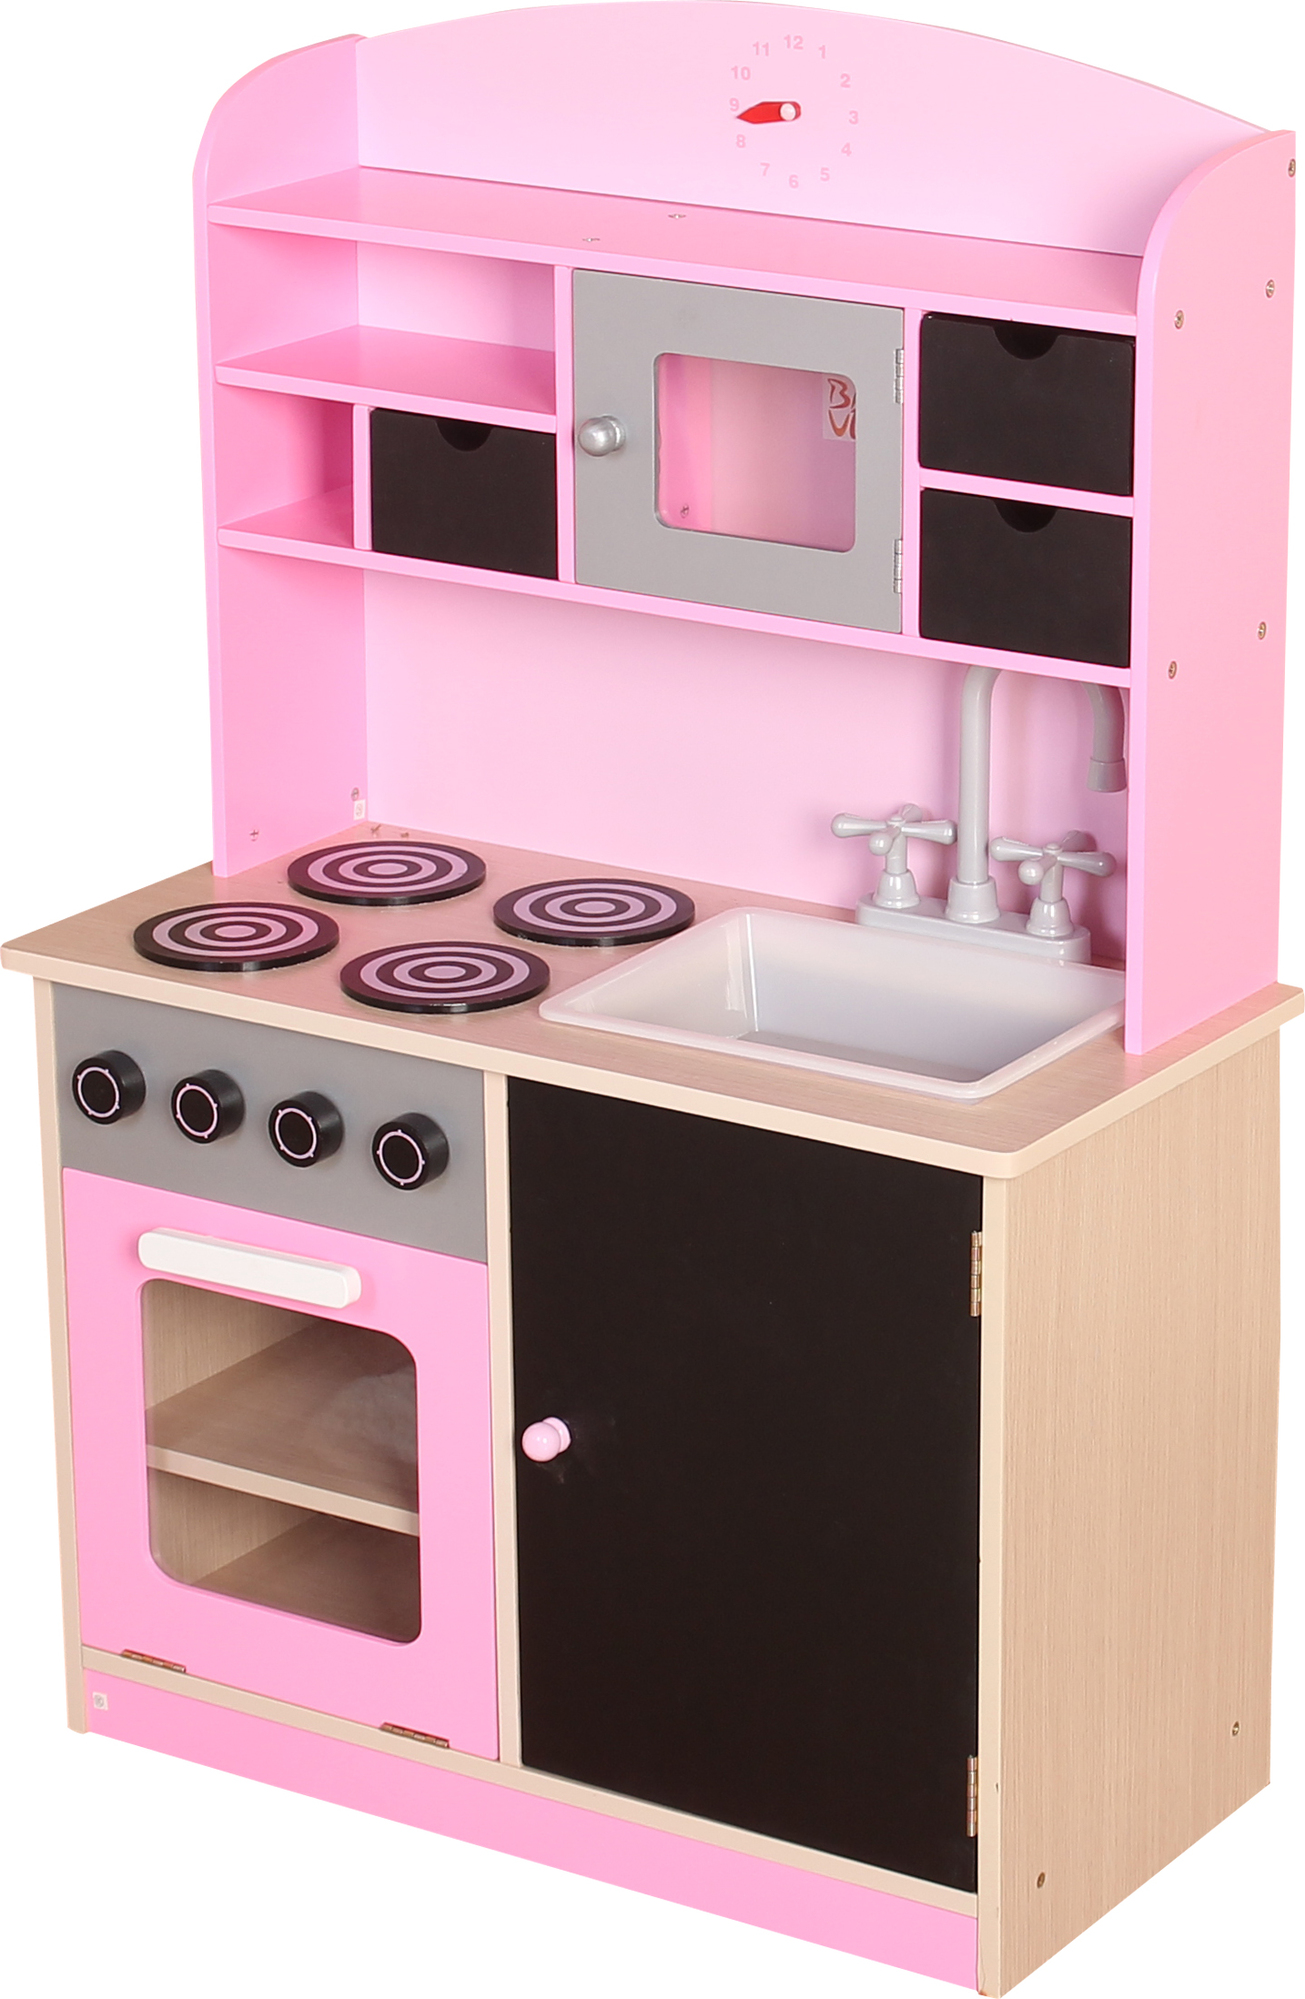 Cucina in legno 60 x 30 x 90 cm - Cucine per Bambini